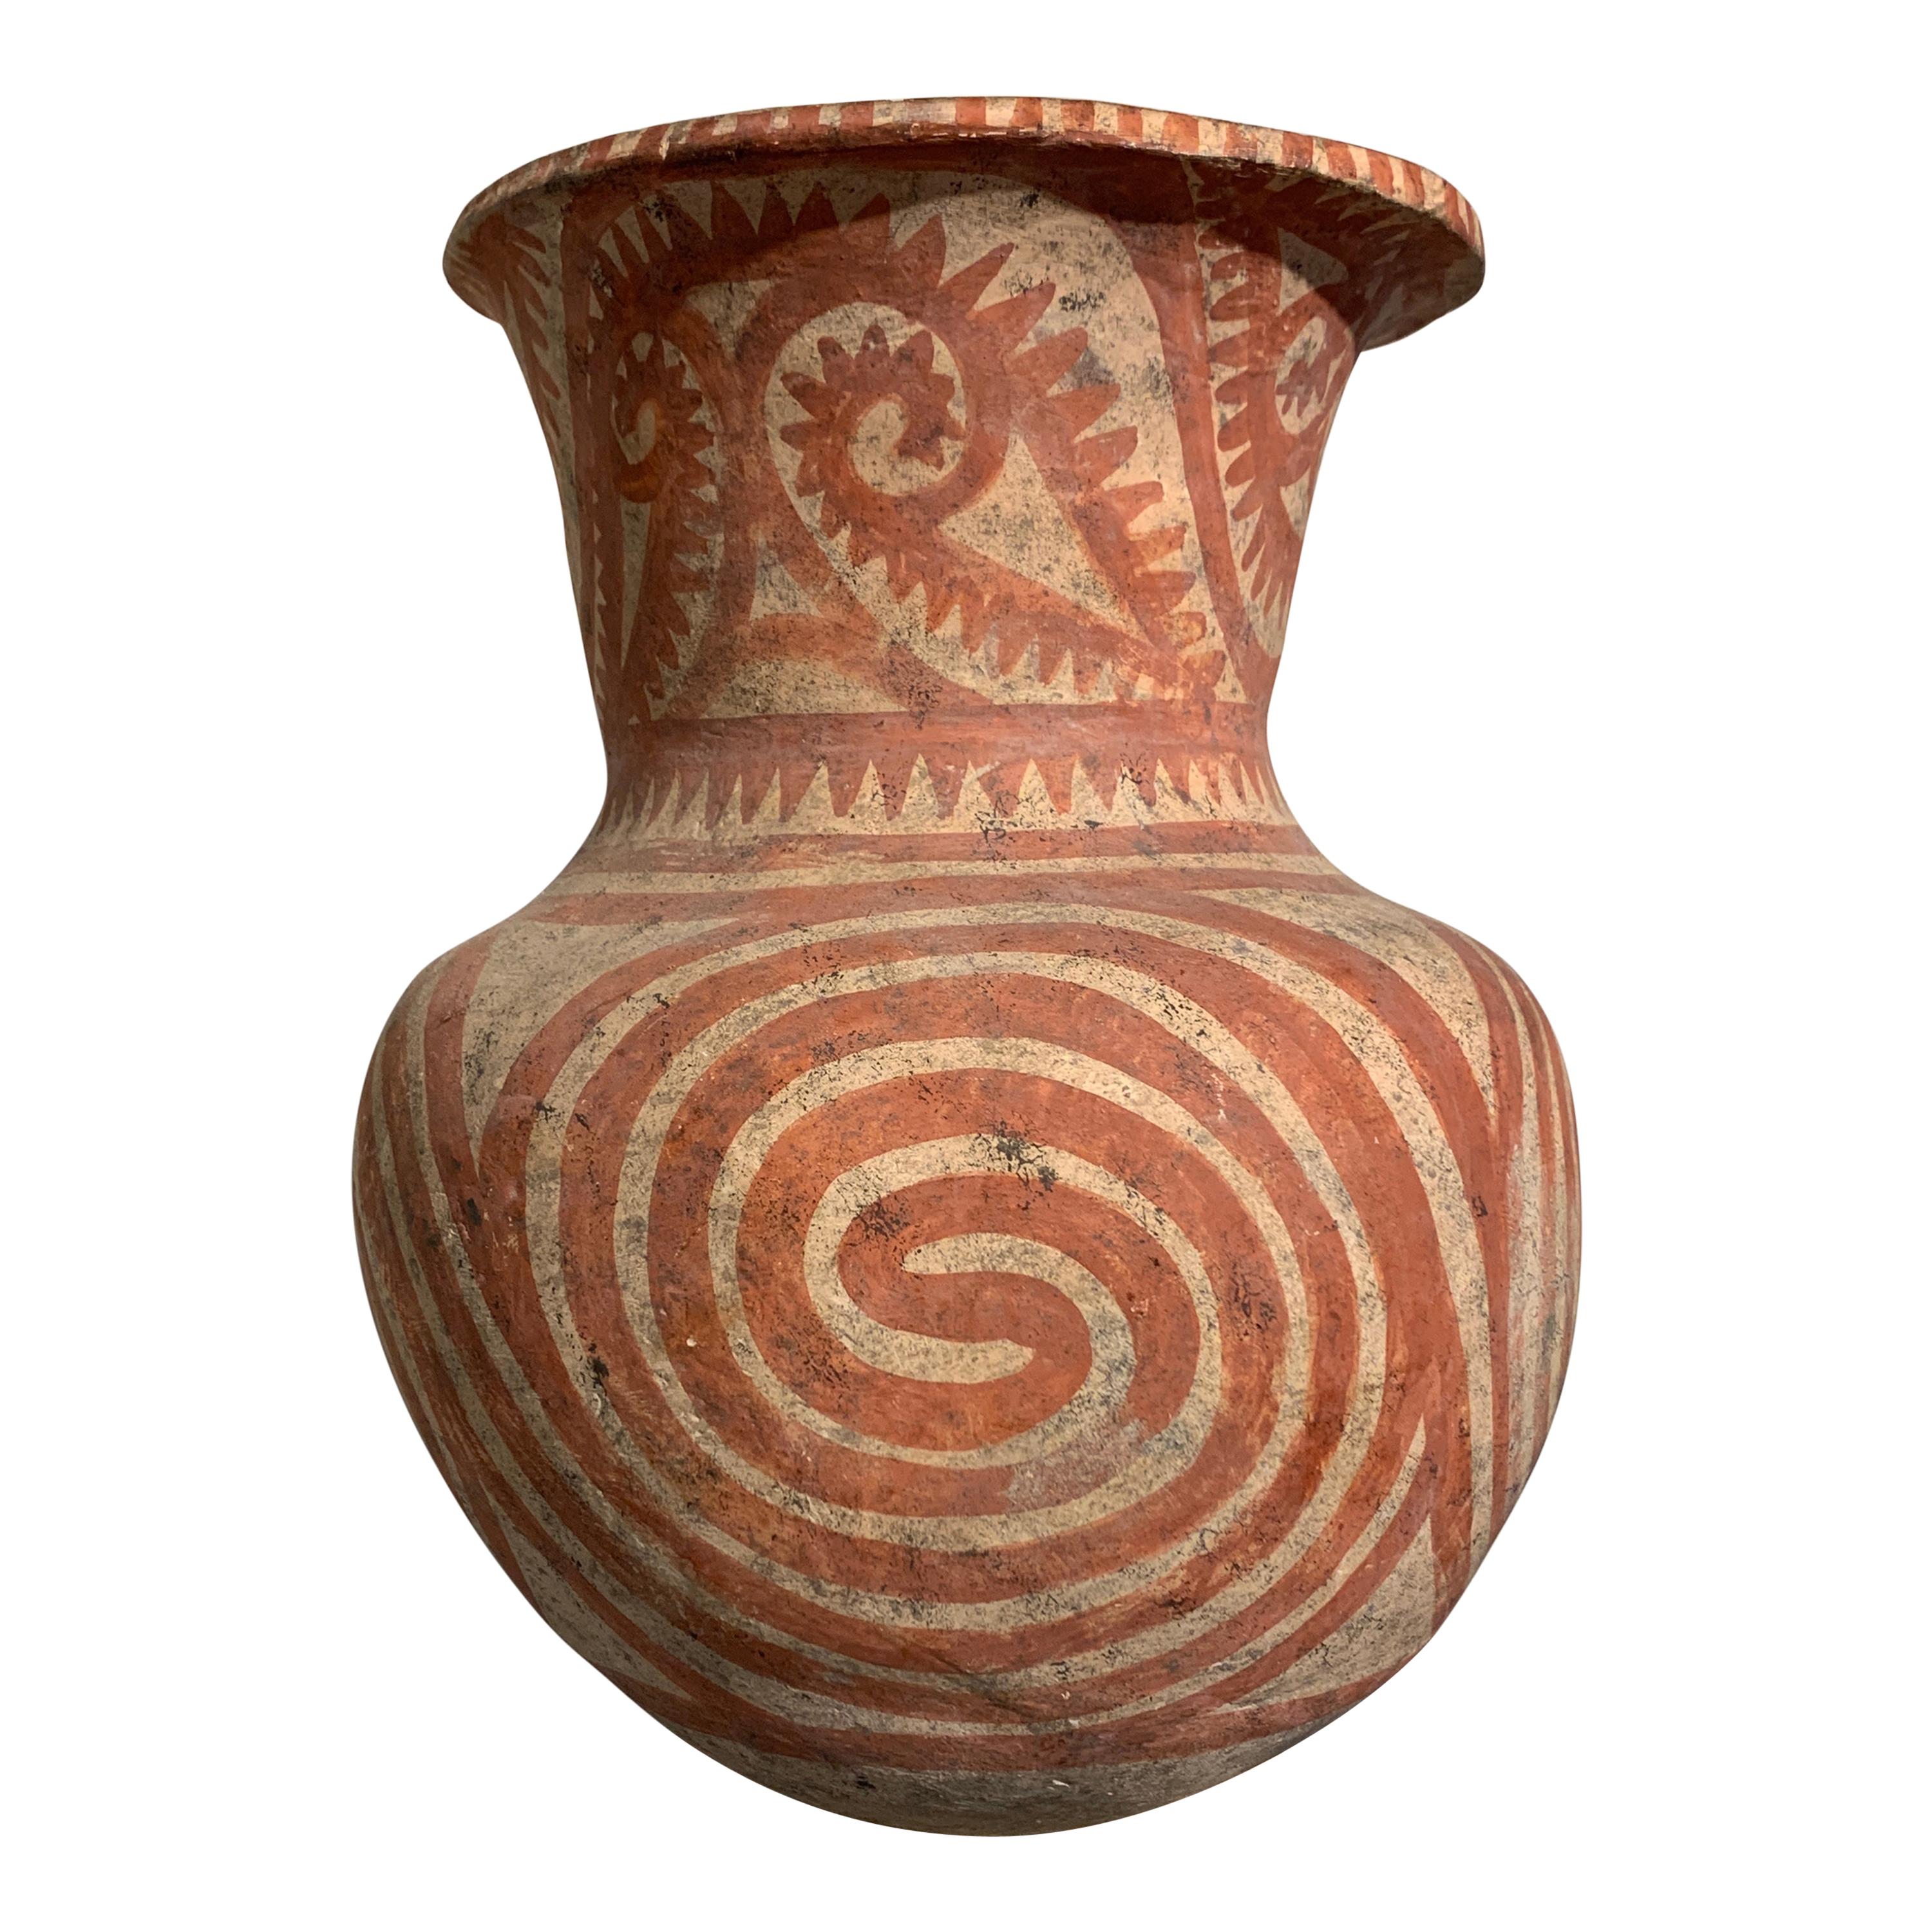 Großes thailändisches Ban Chiang-Gefäß aus bemalter Keramik, späte Periode, um 300 v. Chr.